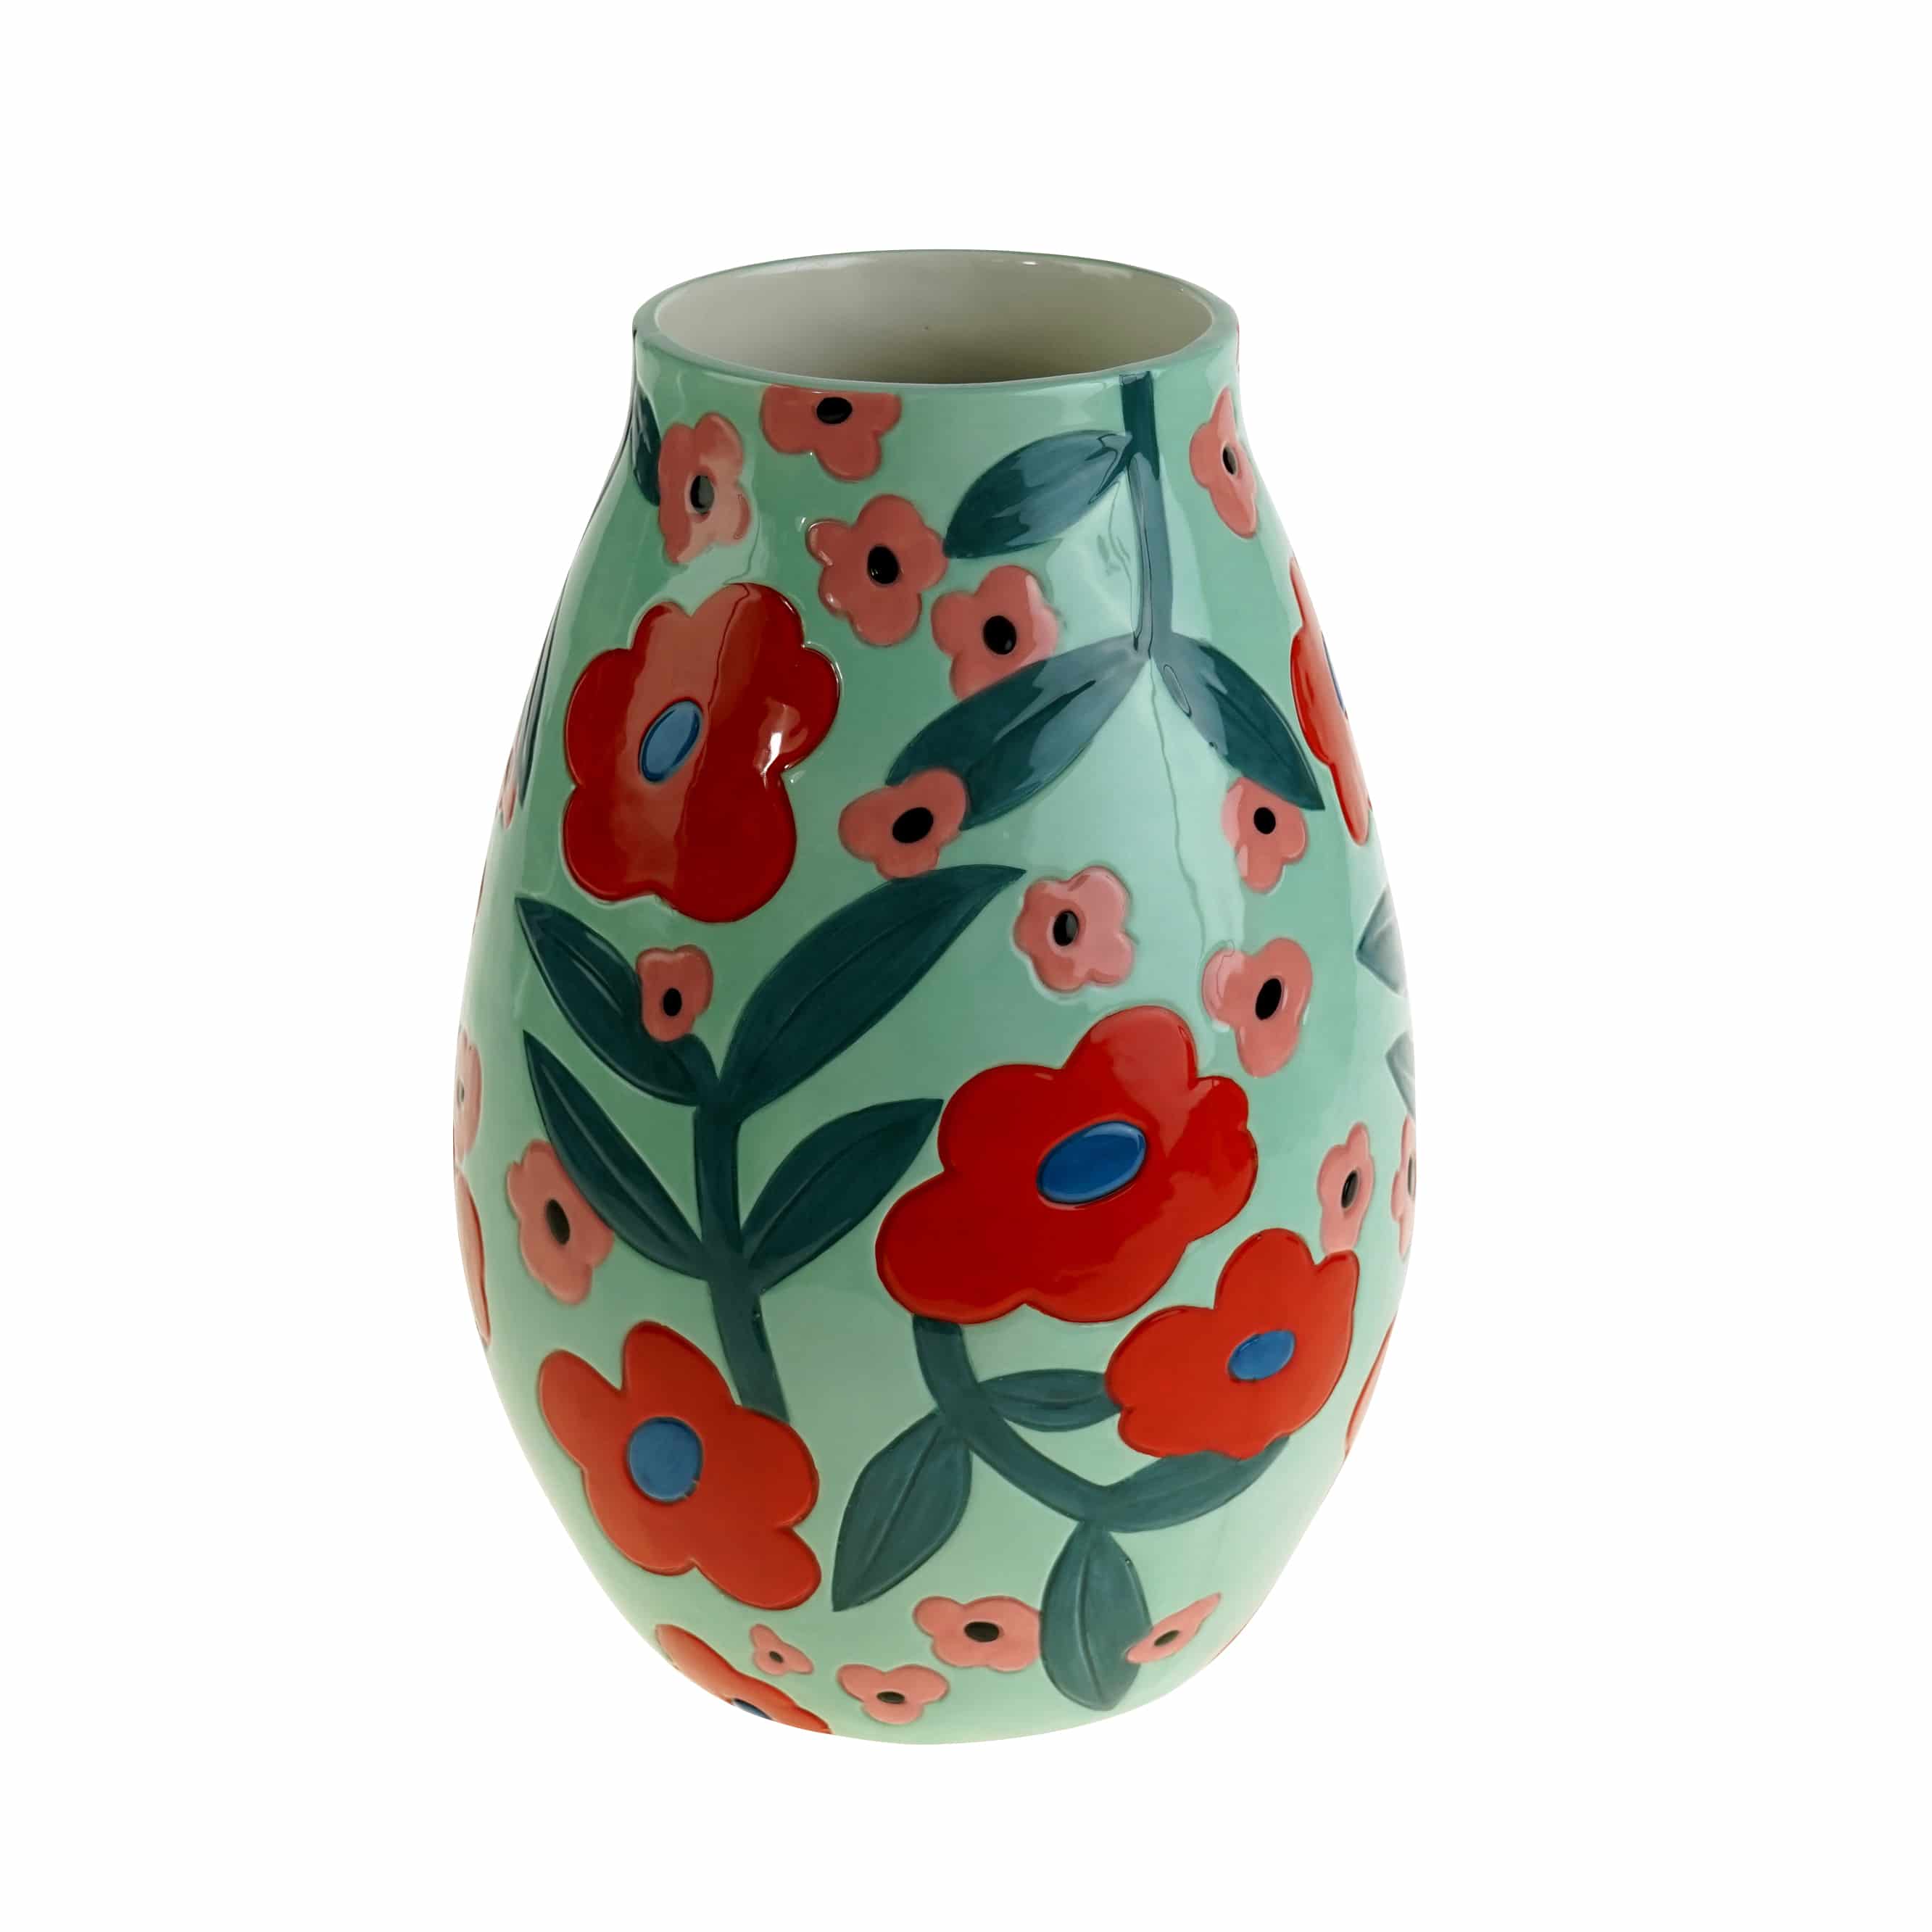 Vase Flores m. Blumenmotiv, mint-rot-grün, handbemalt